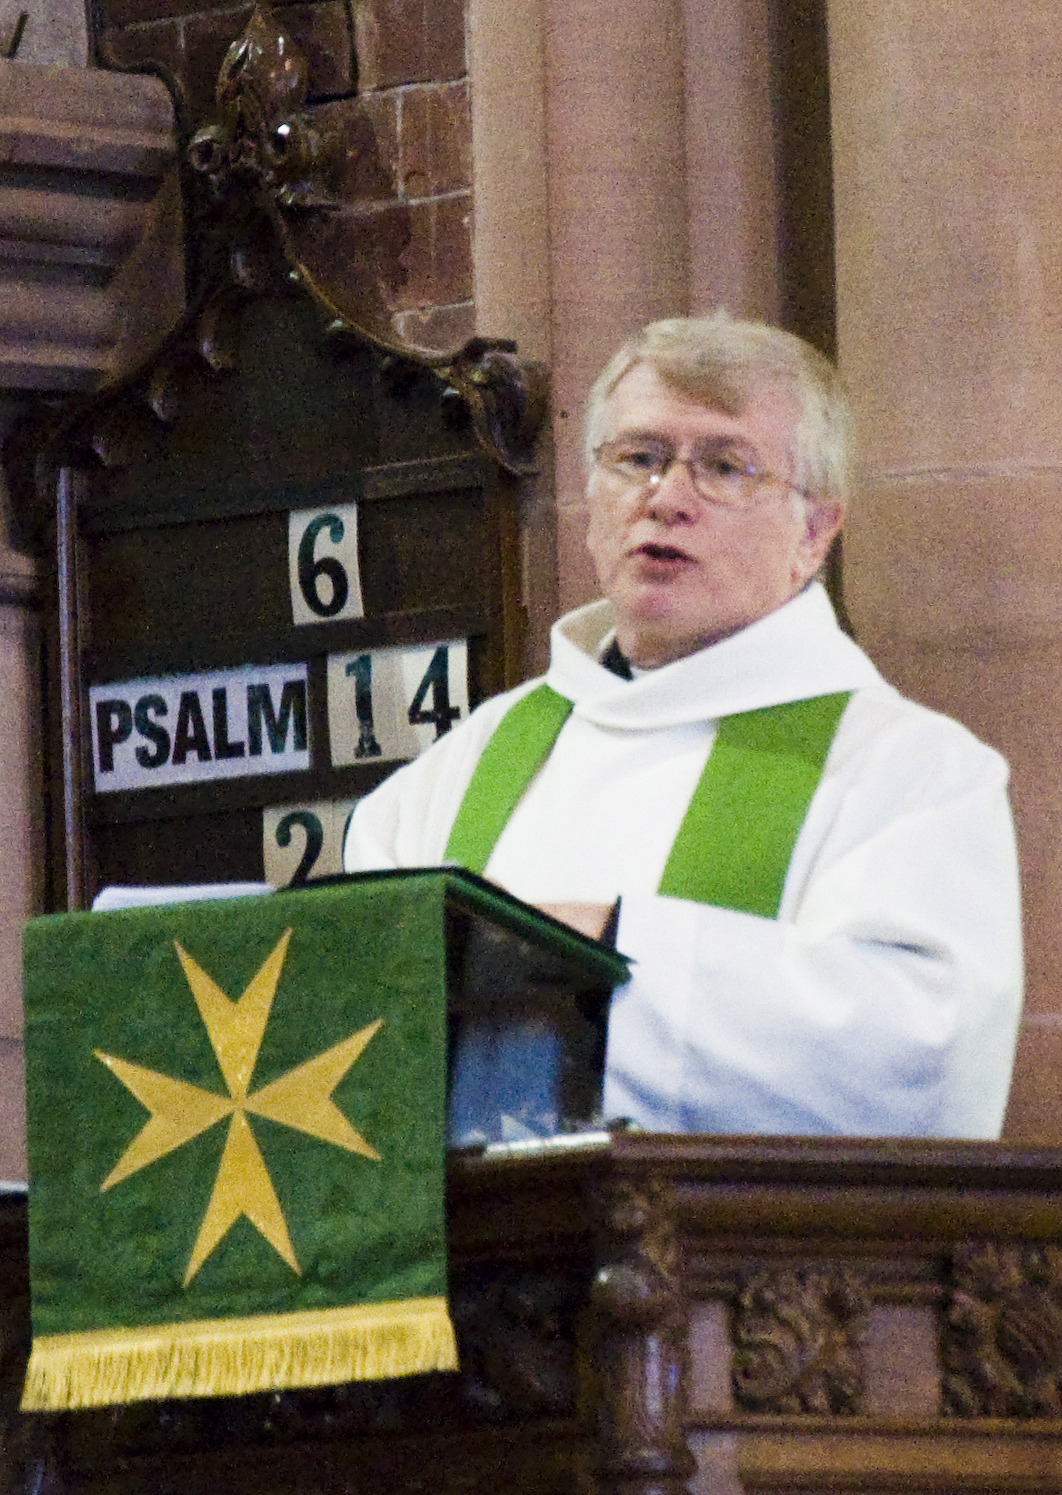 Rod's final sermon in St John's